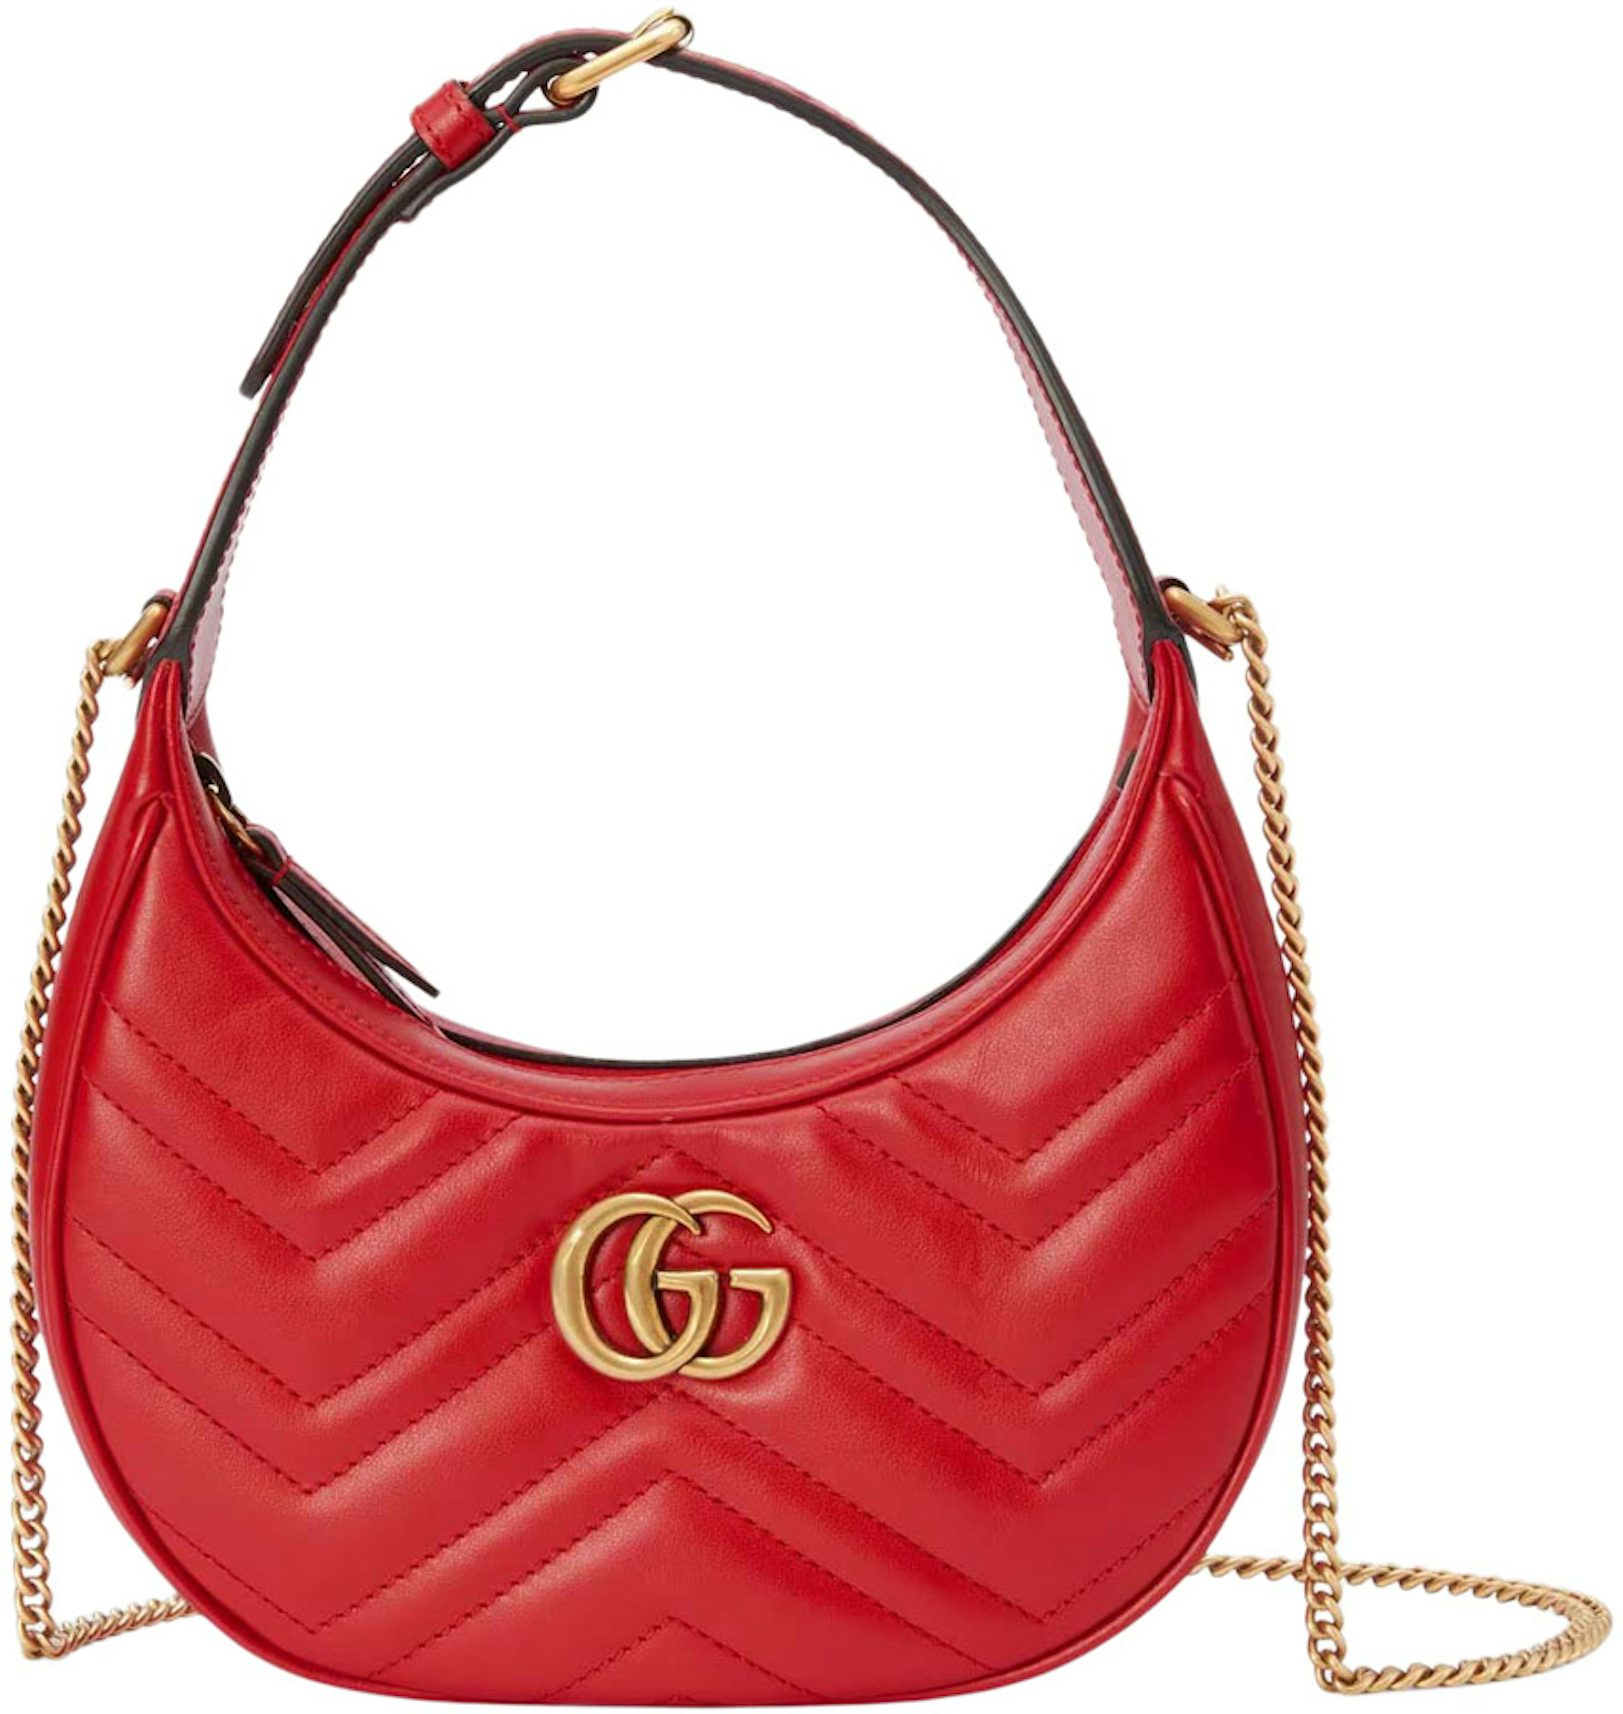 Gucci GG Marmont Medium Shoulder Bag in Porcelain Rose